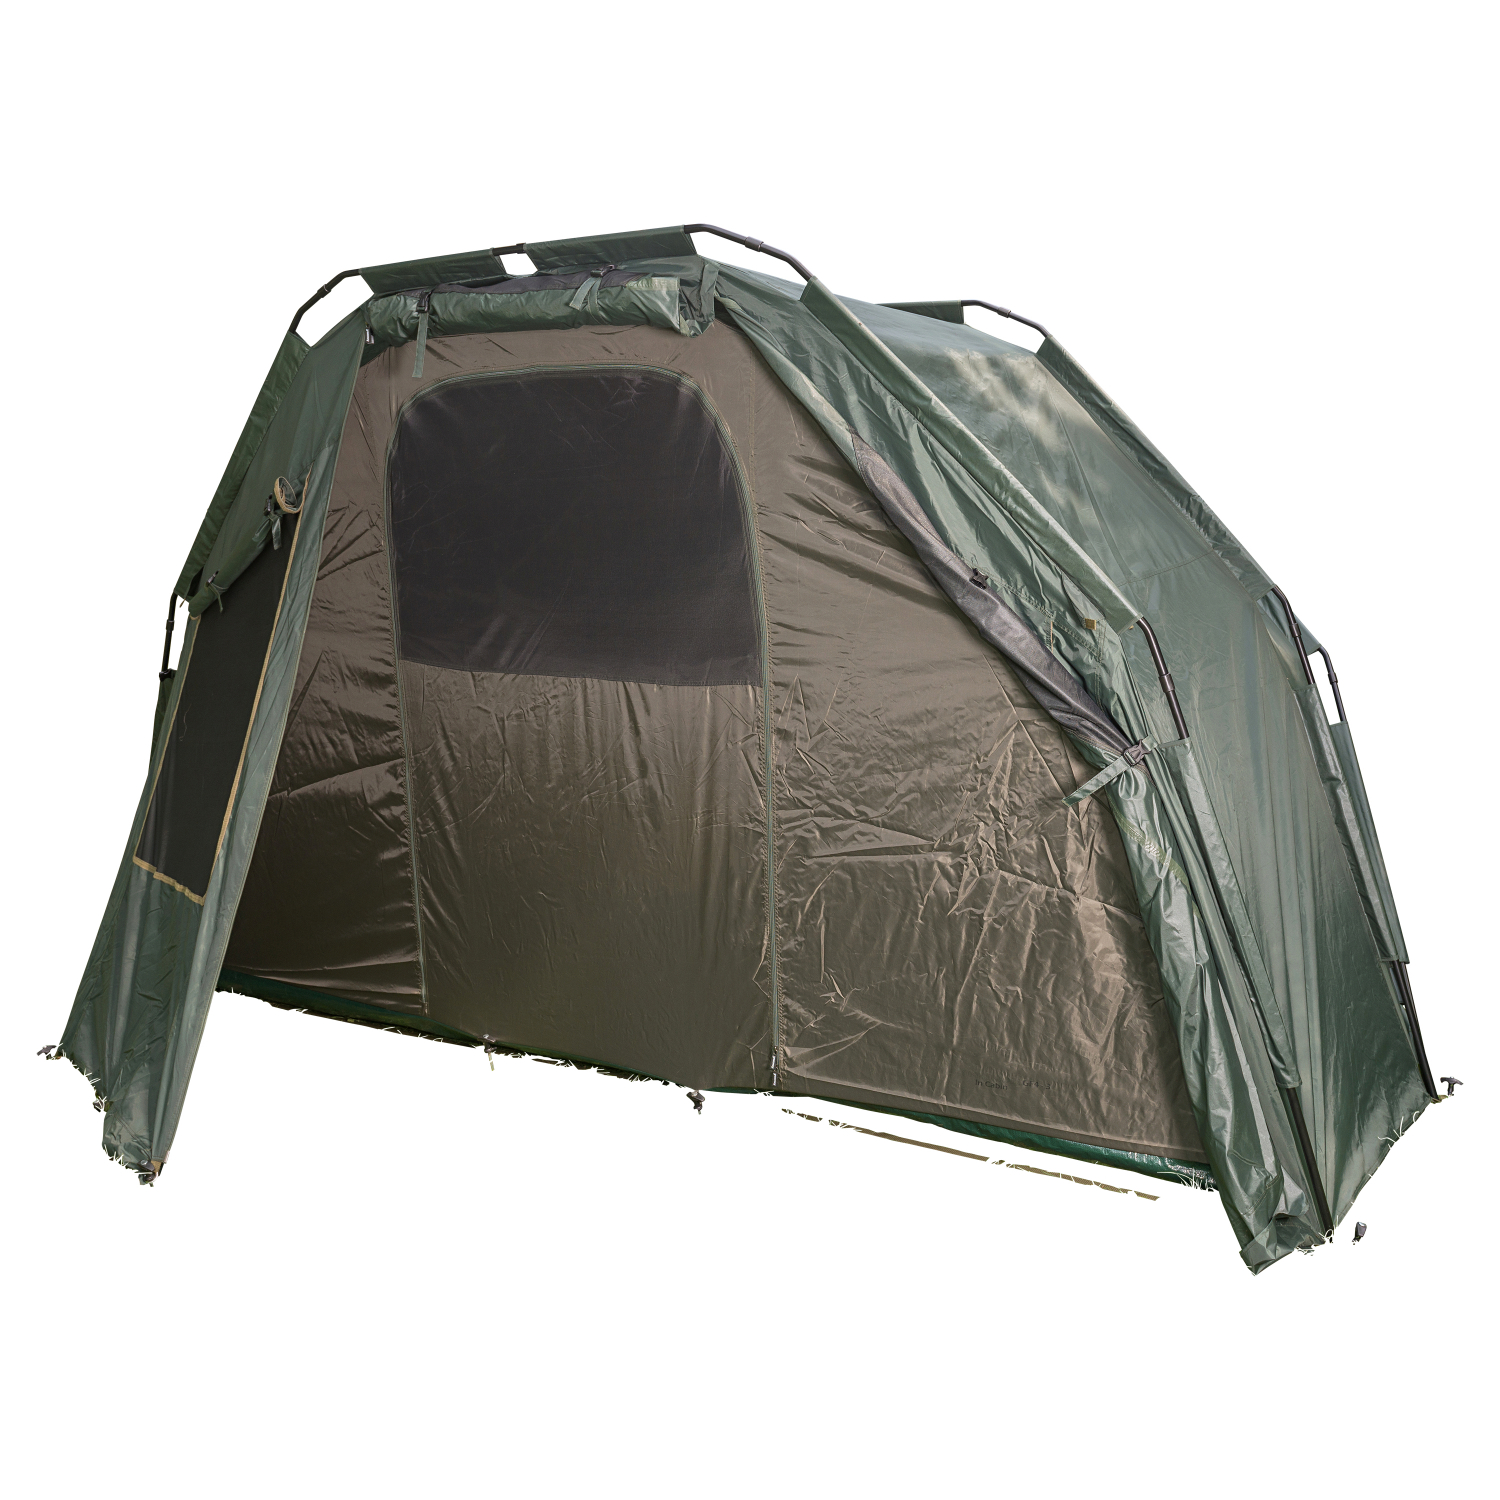 Anaconda Anaconda In Cabin for Tent Nighthawk F4 - 3 